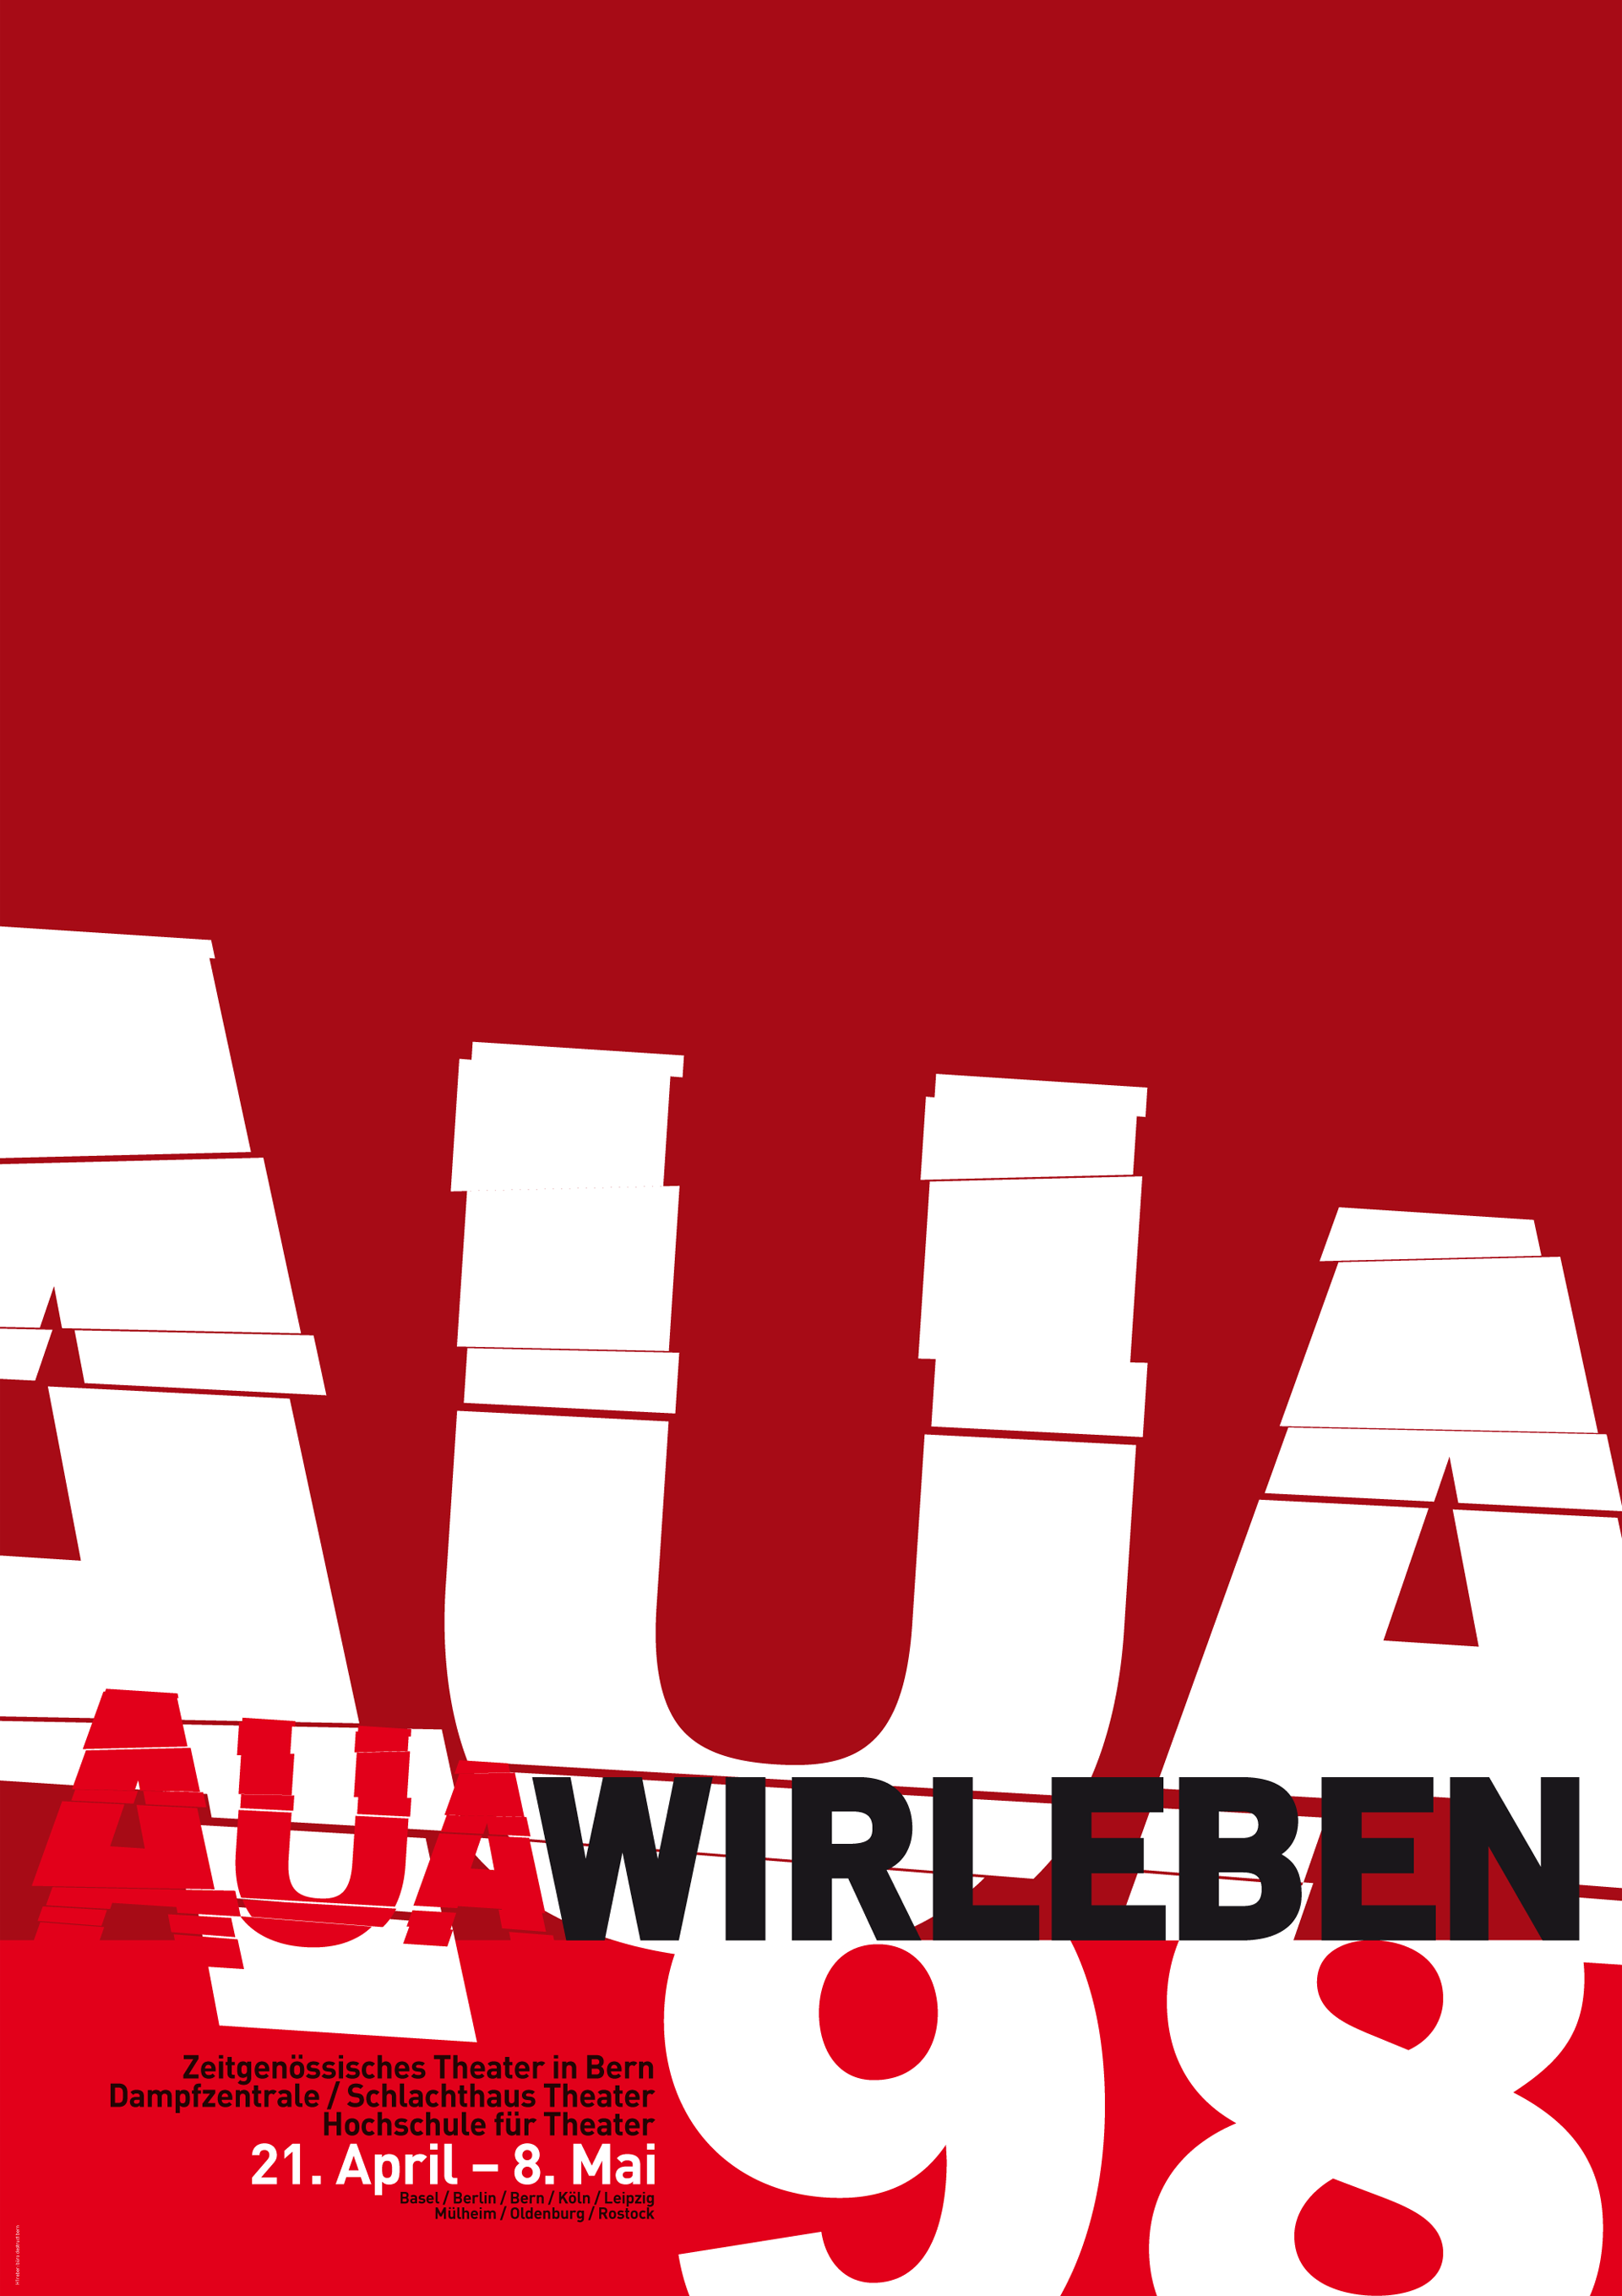 Auawirleben 1998